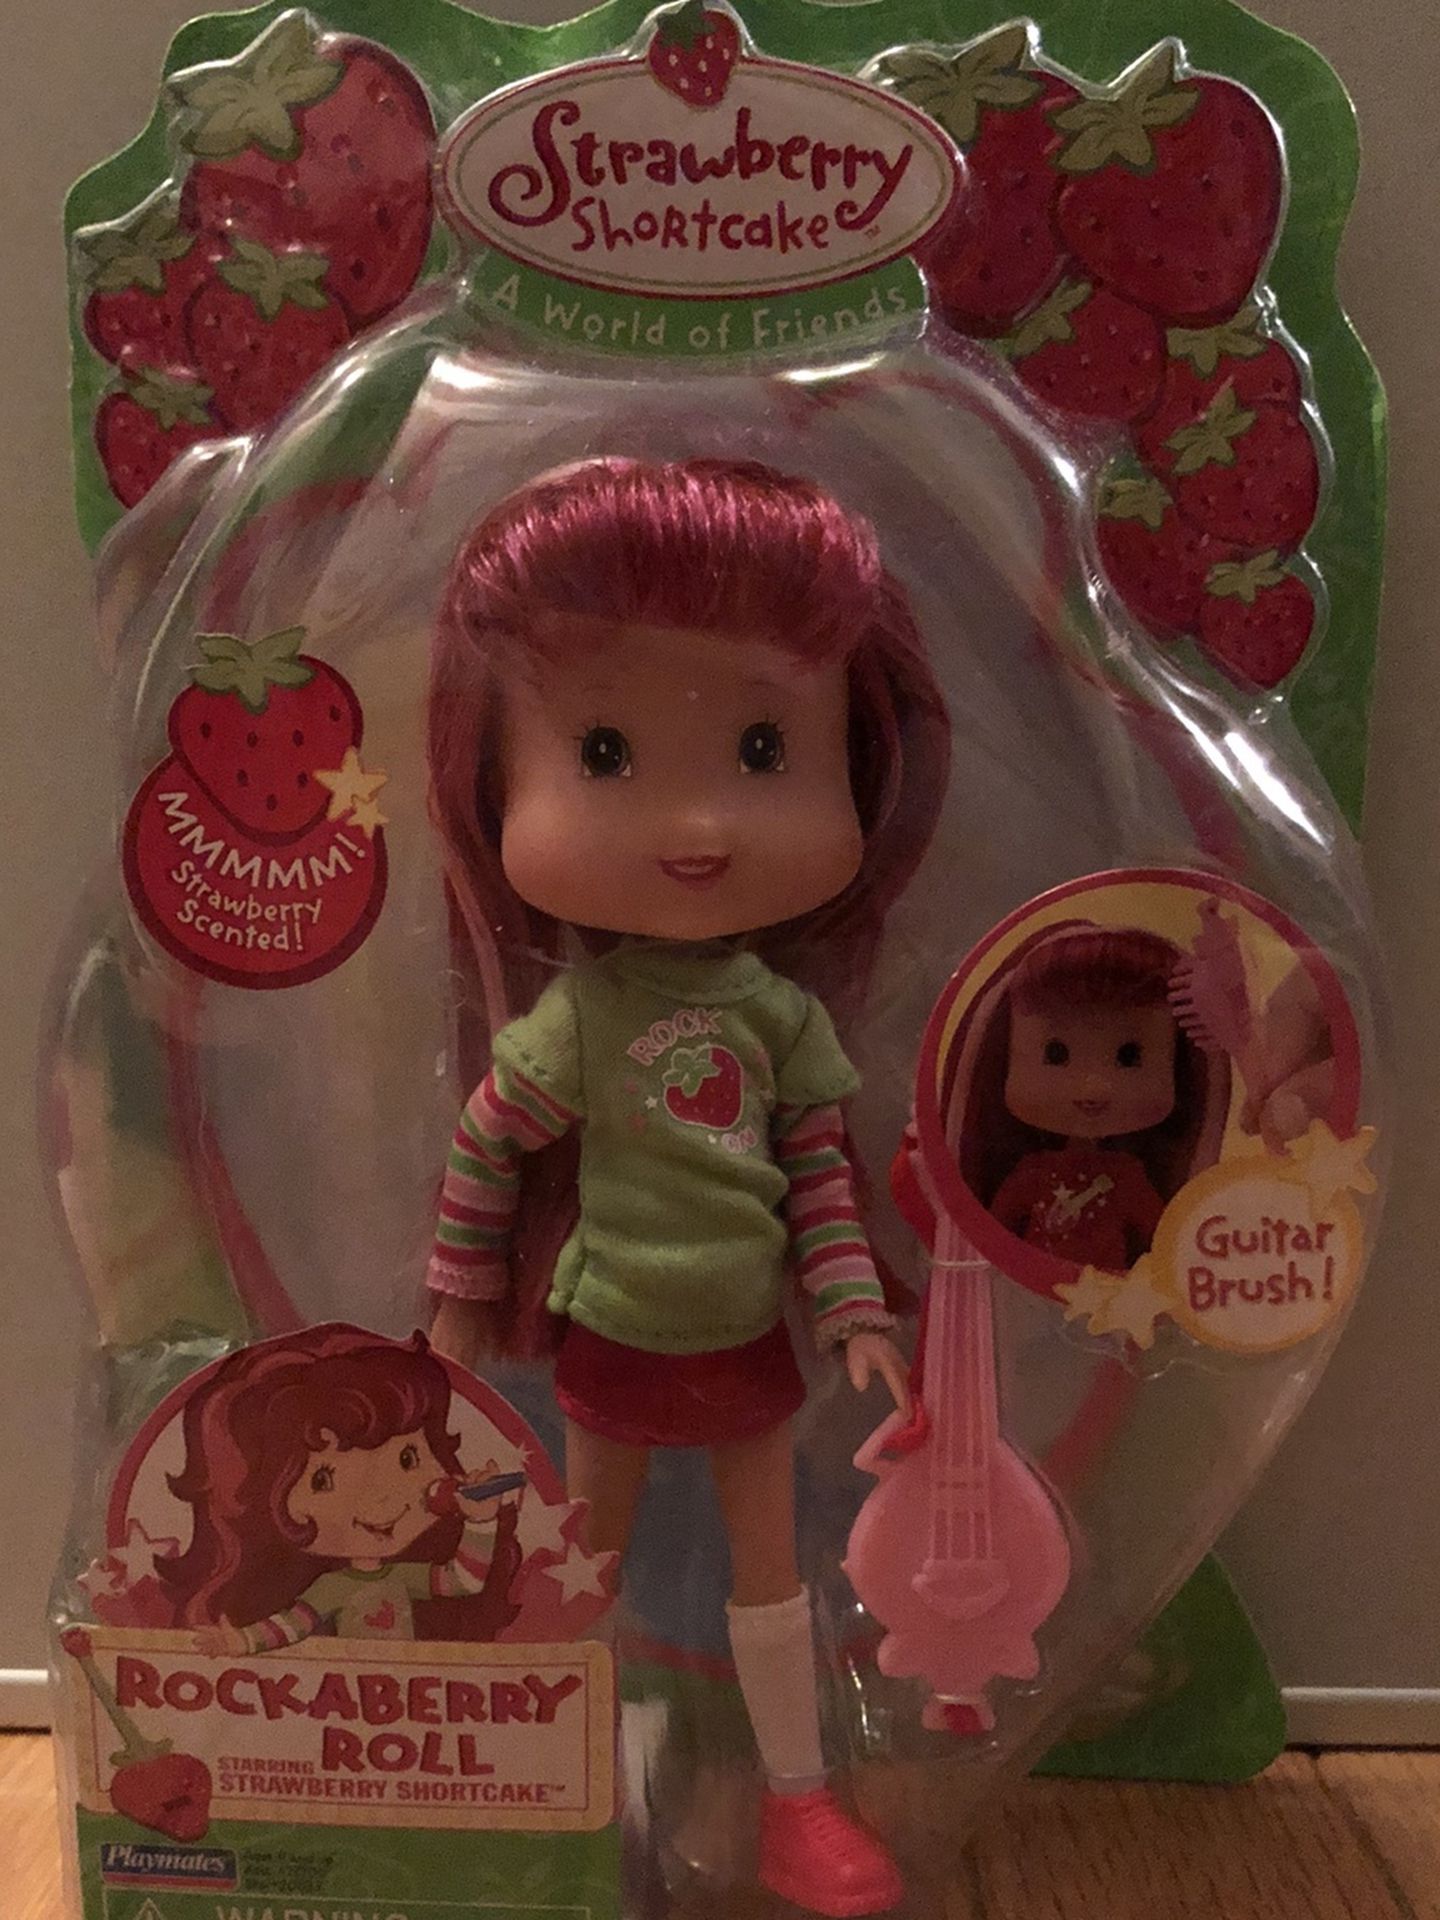 NIB Playmates Strawberry Shortcake Rockaberry Roll Doll 6.5"